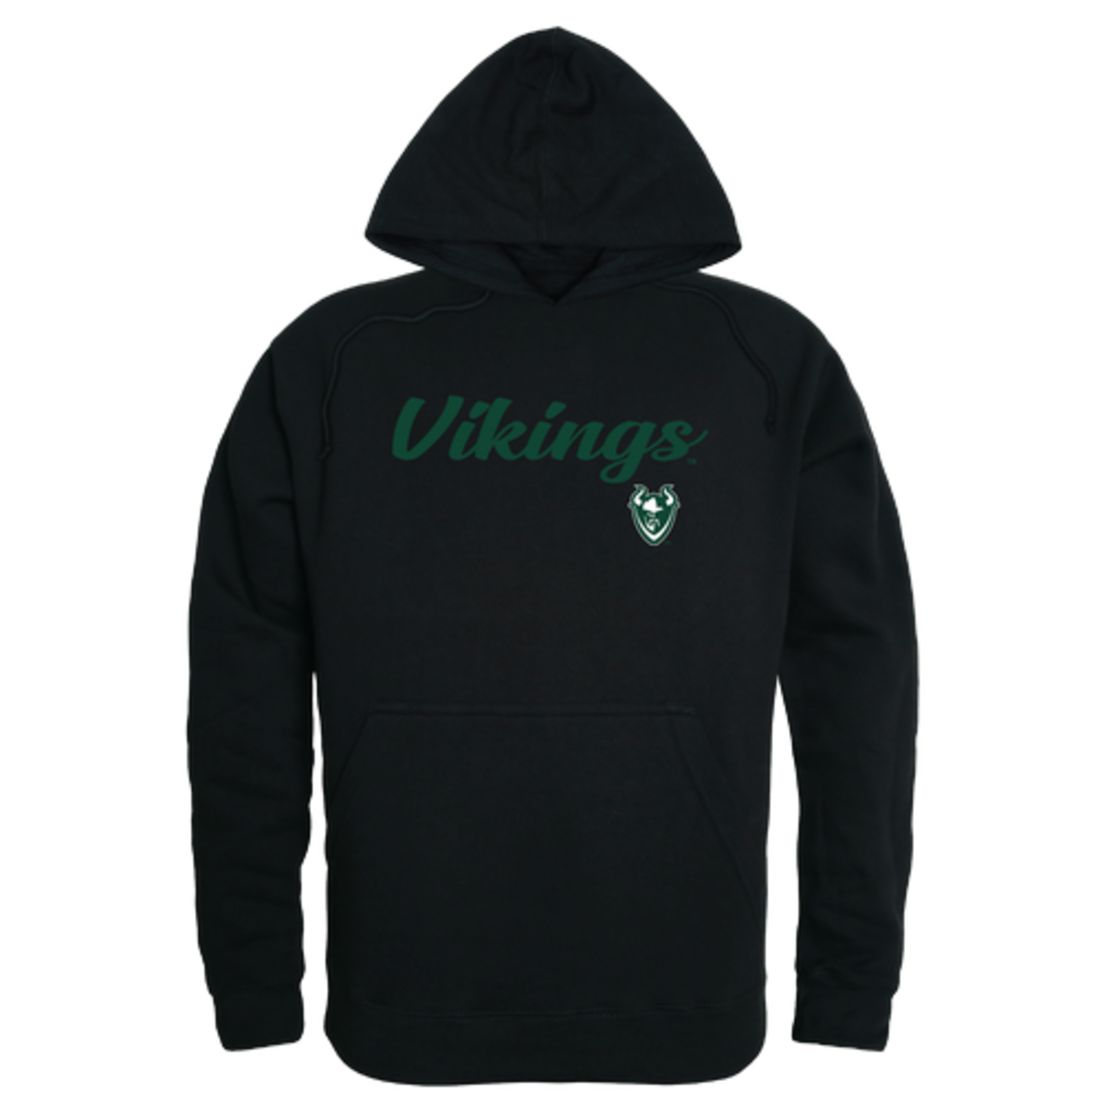 PSU Portland State University Vikings Mens Script Hoodie Sweatshirt Black-Campus-Wardrobe